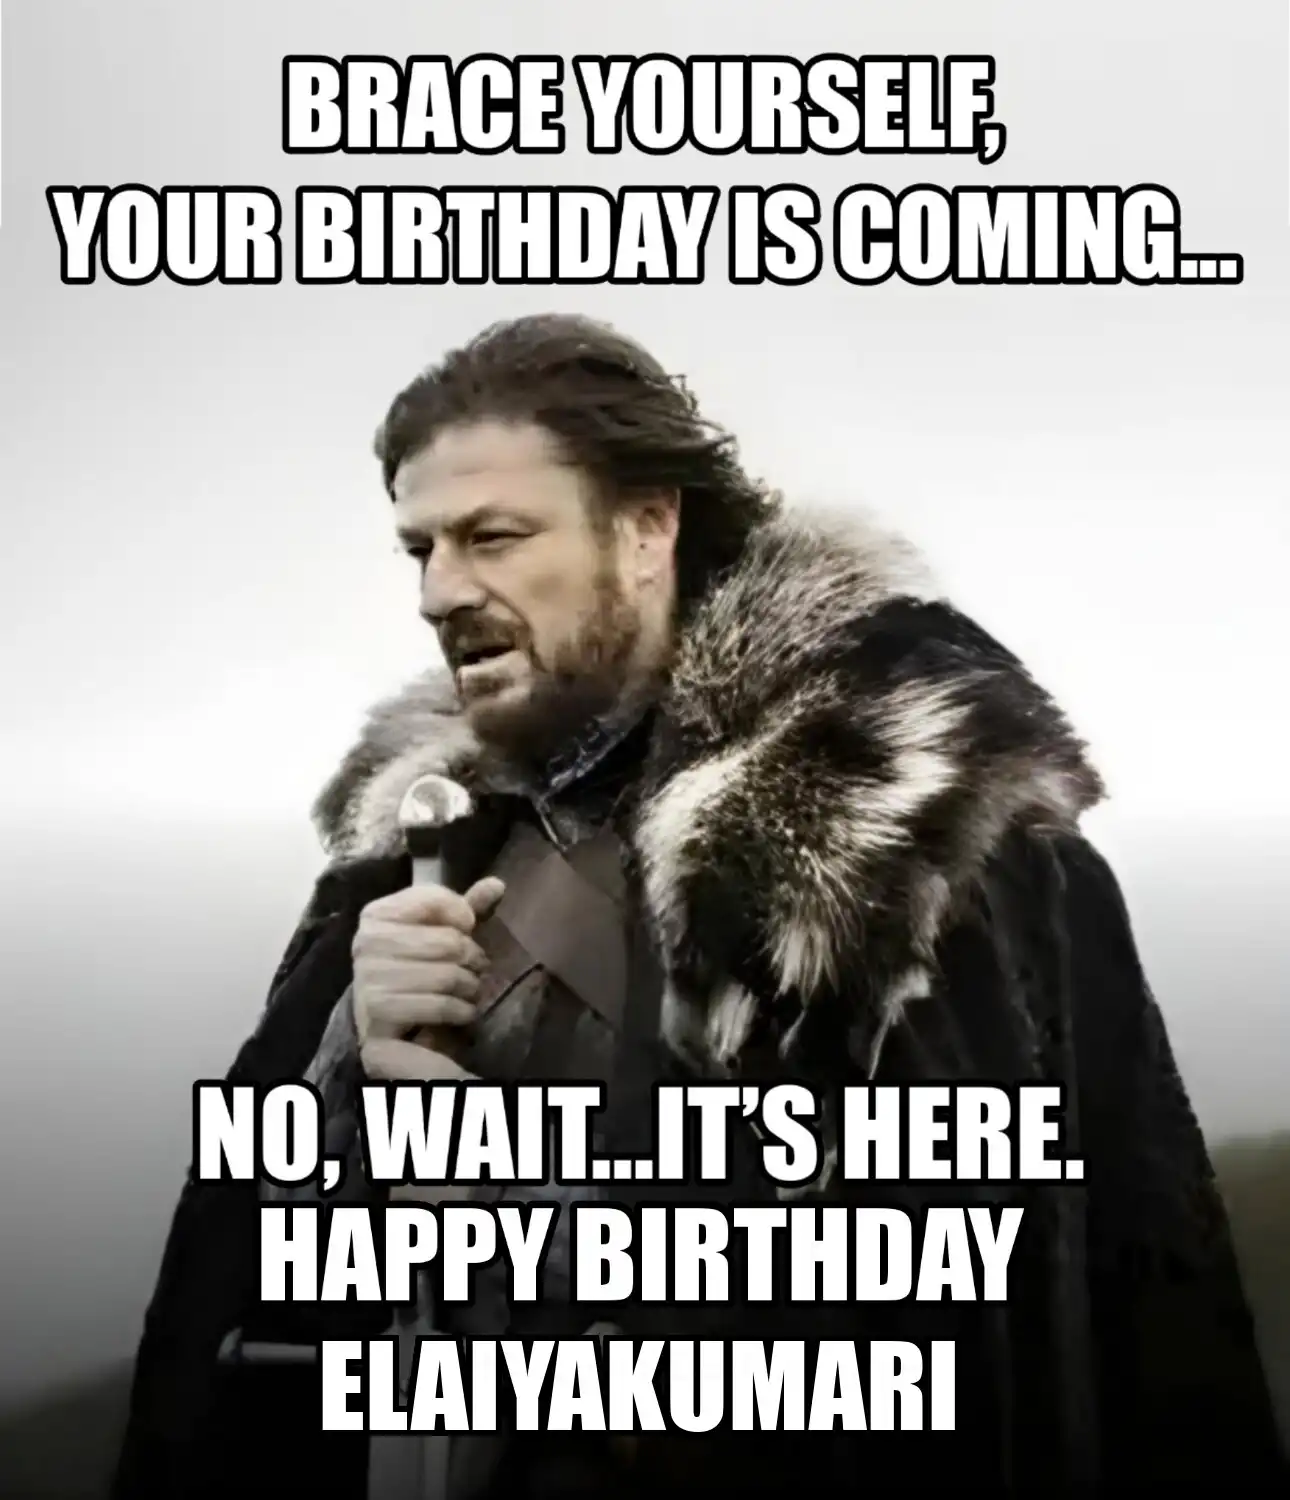 Happy Birthday Elaiyakumari Brace Yourself Your Birthday Is Coming Meme